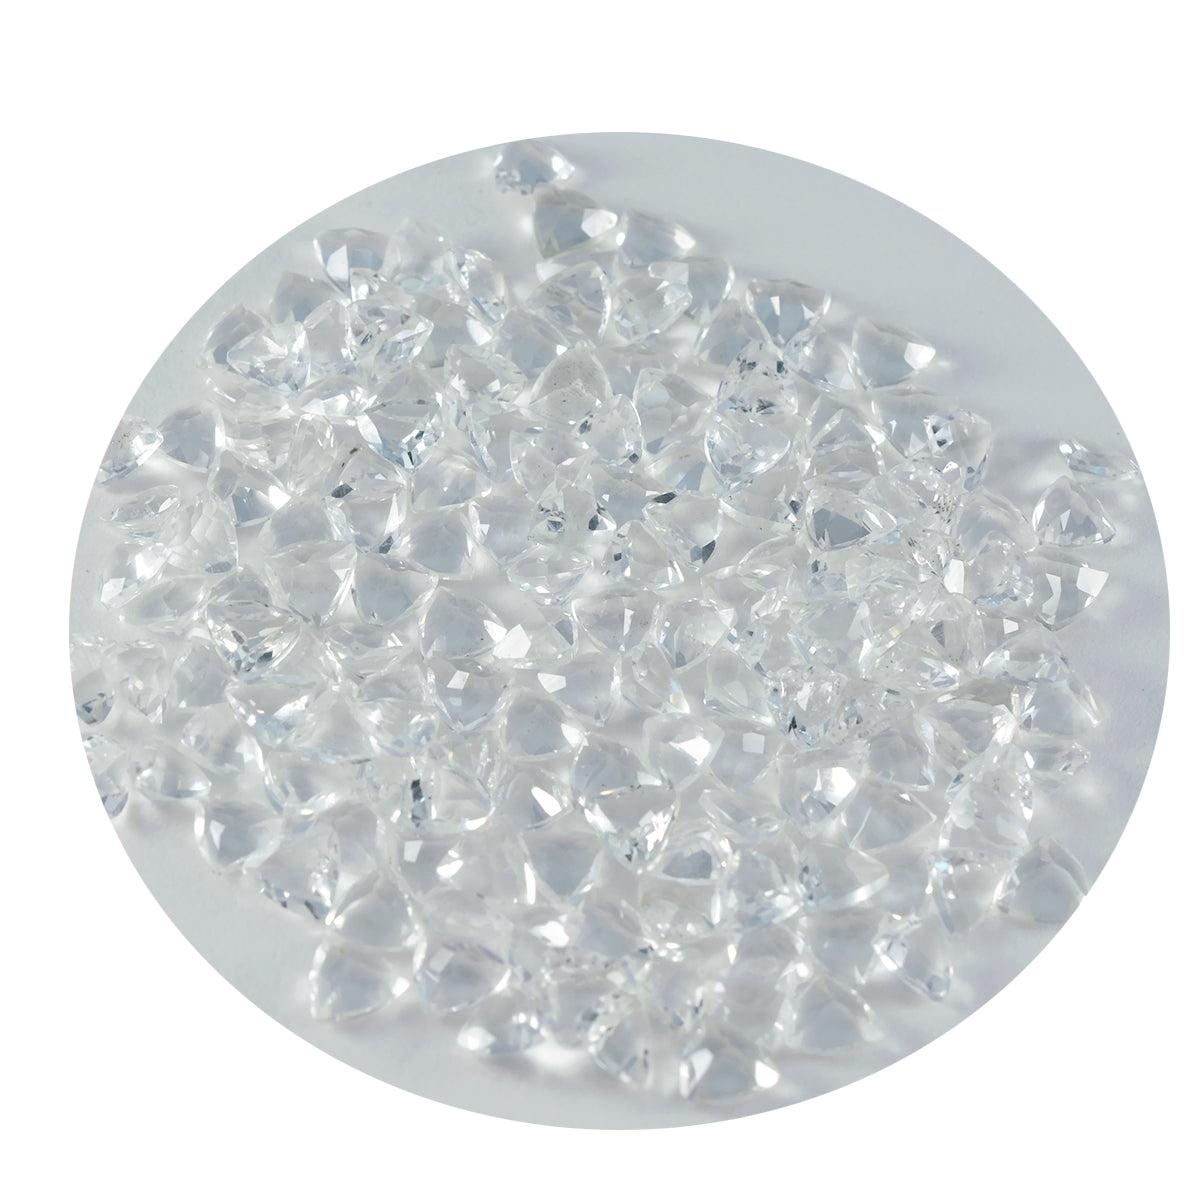 Riyogems 1 Stück weißer Kristallquarz, facettiert, 5 x 5 mm, Trillionenform, wunderbare Qualitätsedelsteine